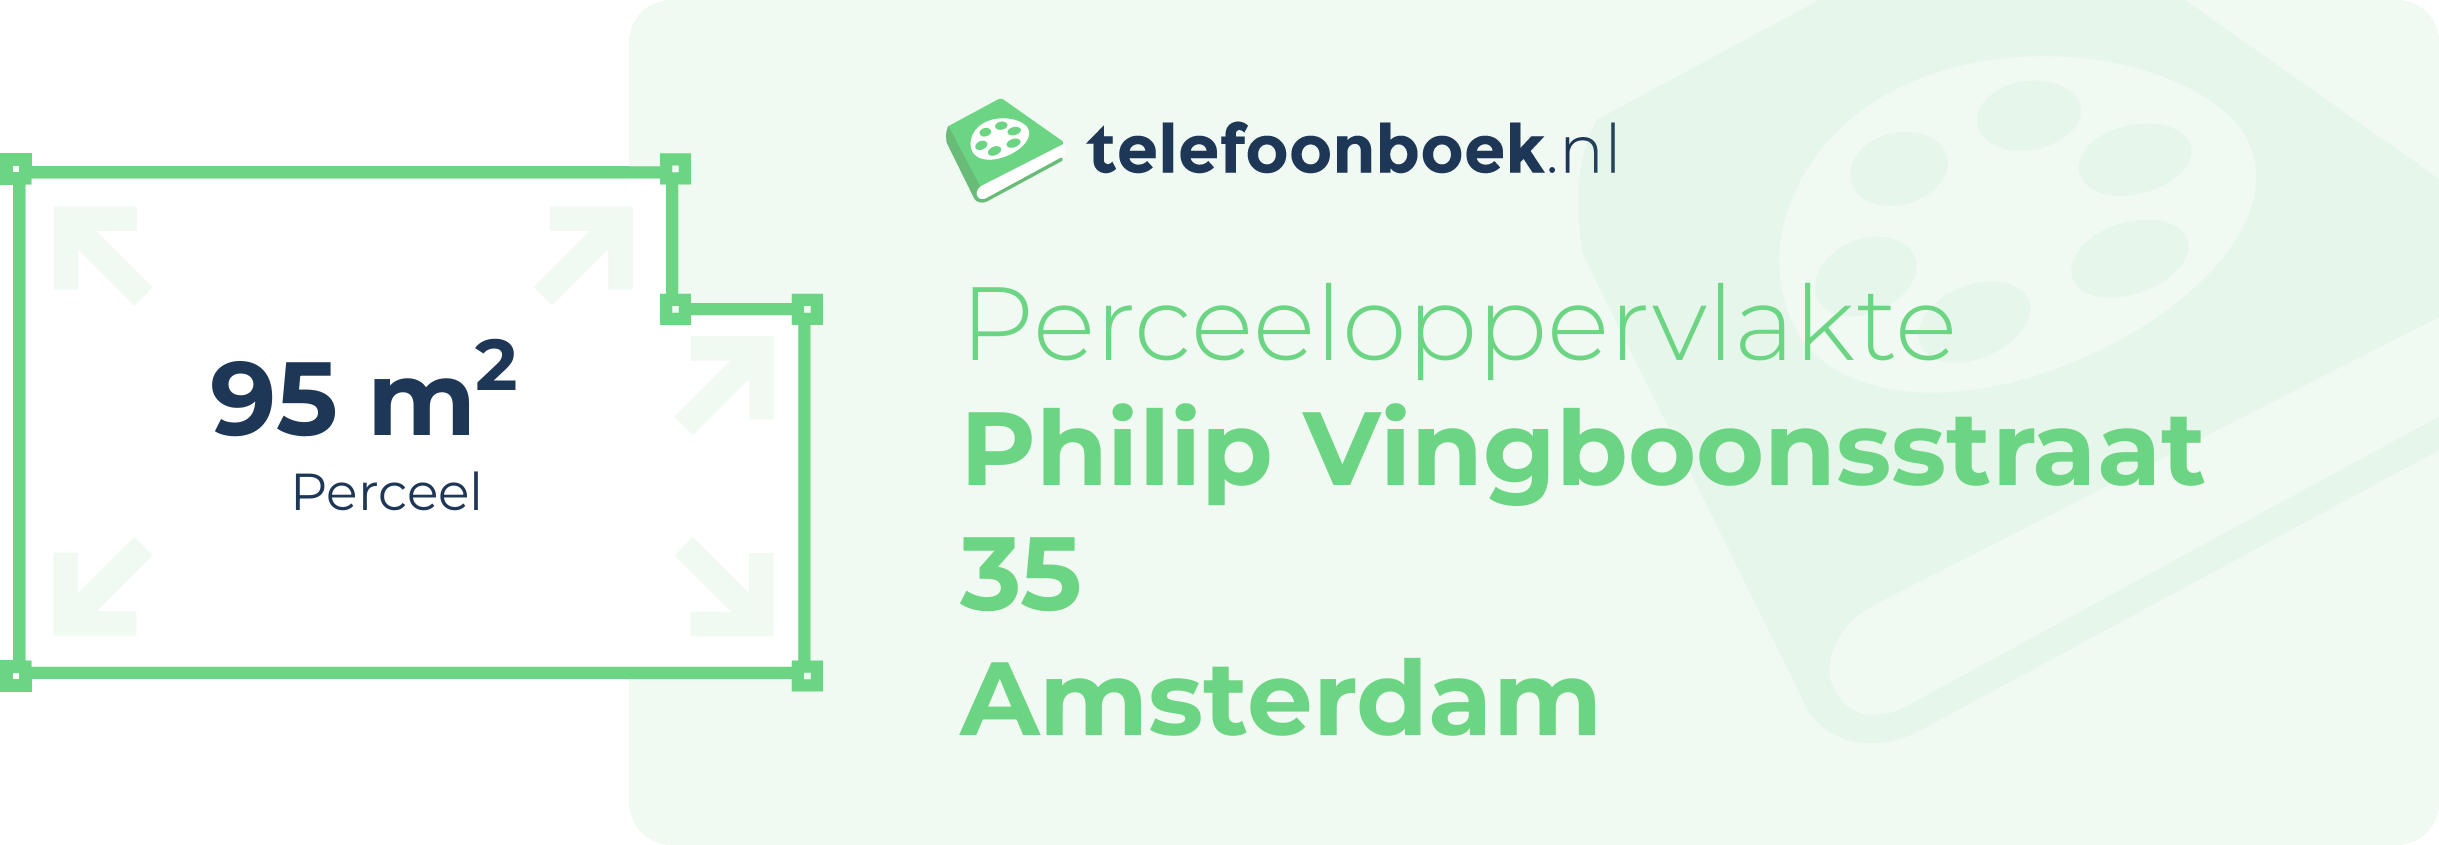 Perceeloppervlakte Philip Vingboonsstraat 35 Amsterdam